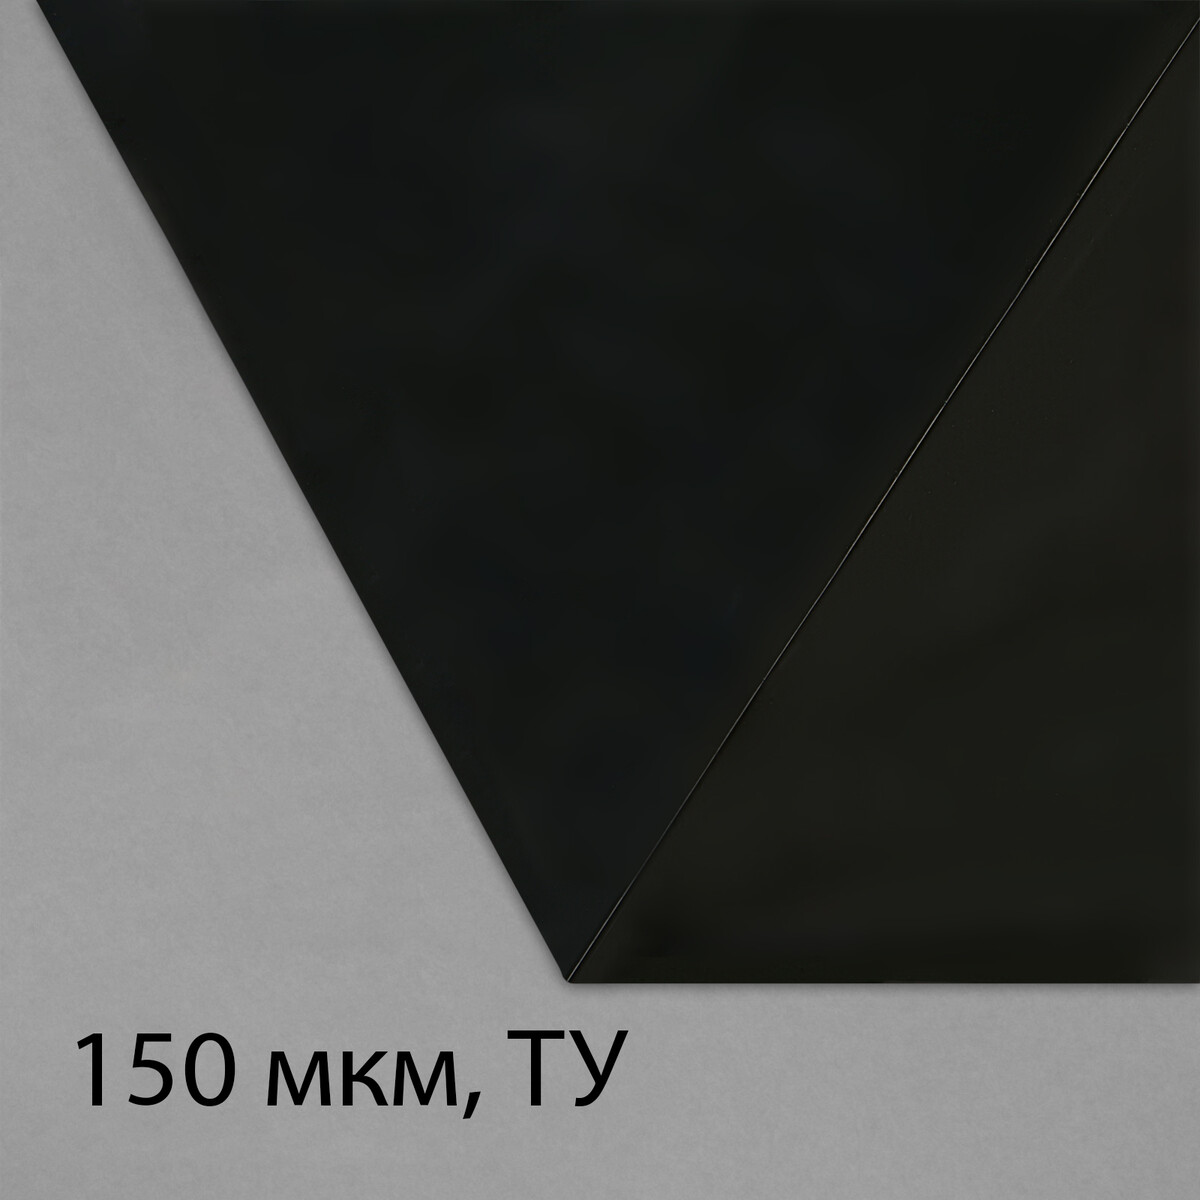 Пленка из полиэтилена, техническая, толщина 150 мкм, черная, 5 × 3 м, рукав (1.5 м × 2), эконом 50%, для дома и сада